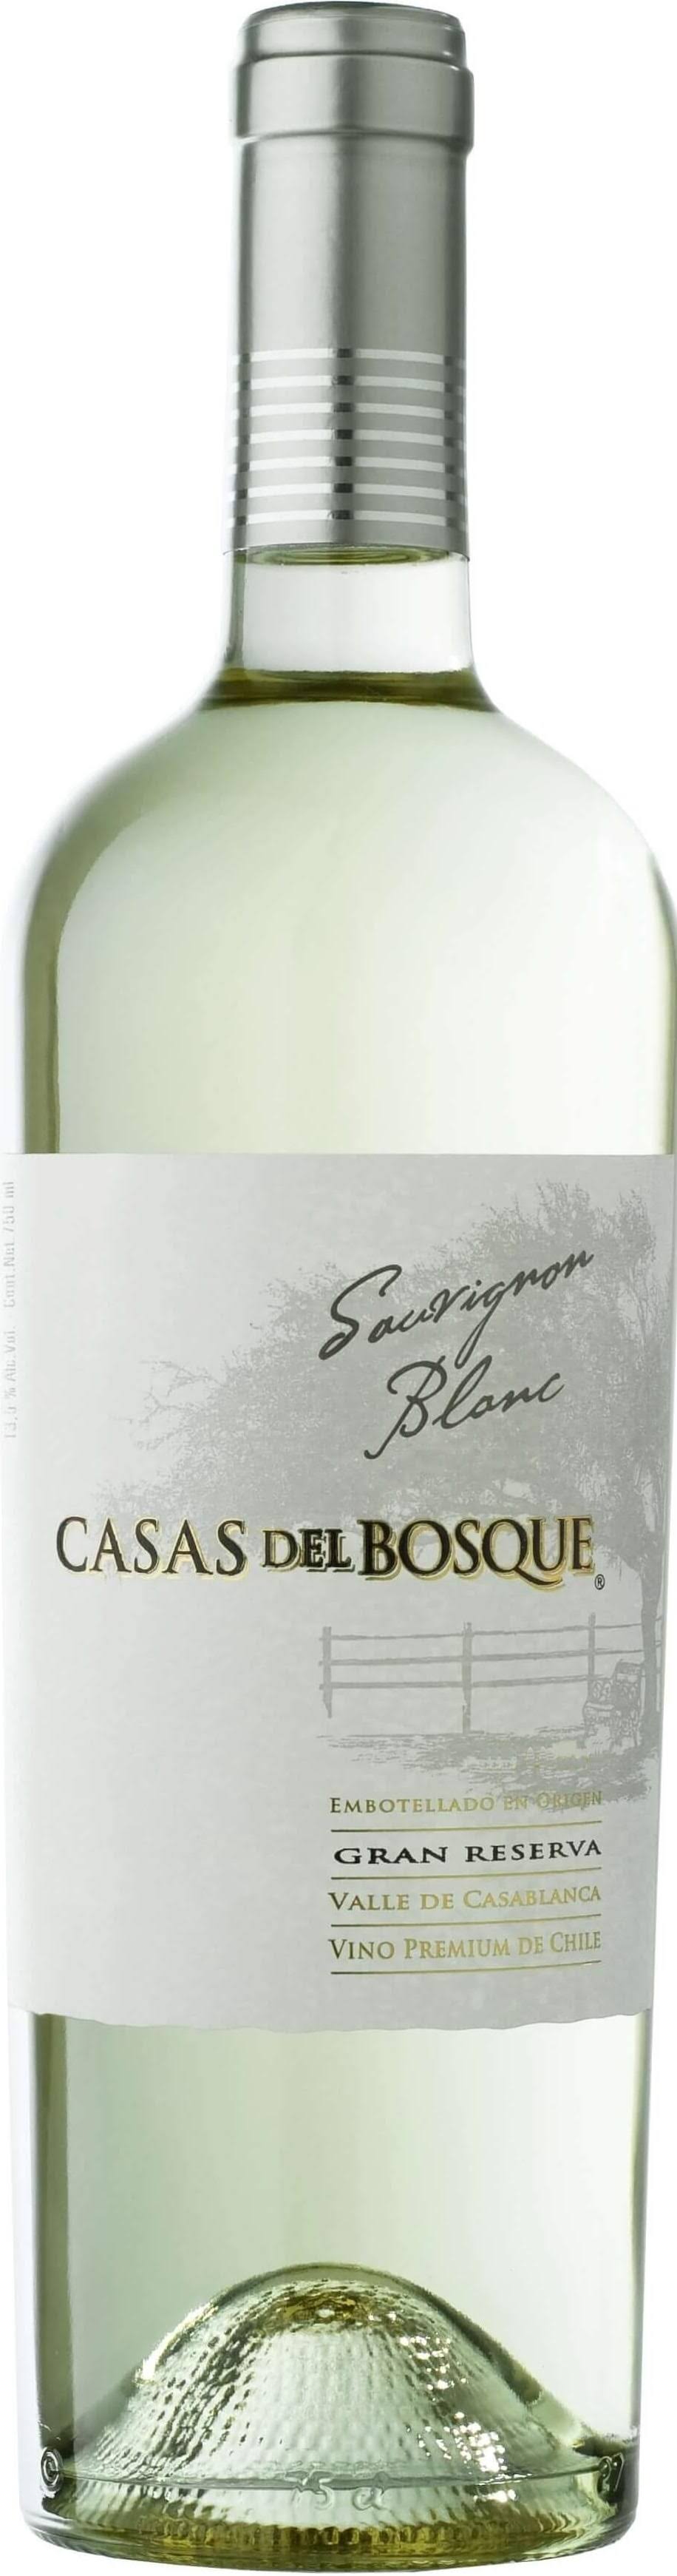 Casas Del Bosque Gran Reserva Sauvignon Blanc 2014 White Wine from South America - 750ml